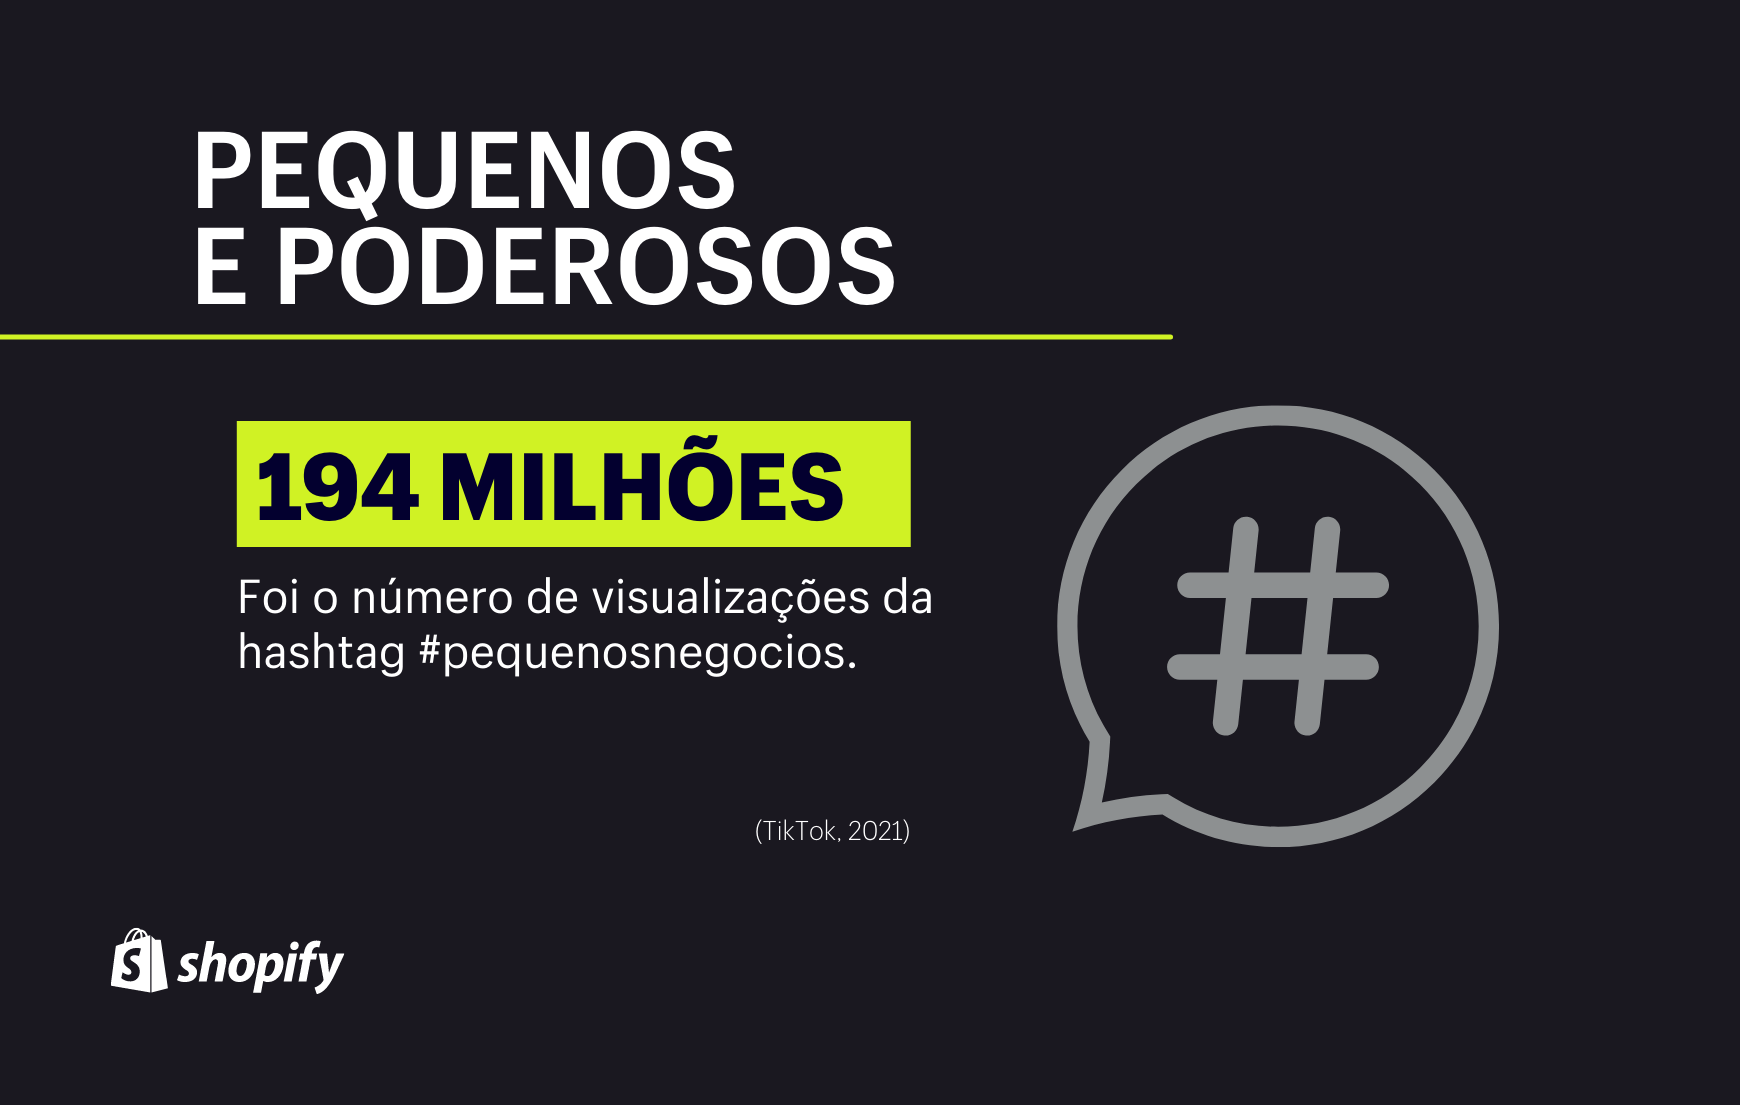 Infográfico com fundo preto. No primeiro plano, em verde e branco, há a informação de que a hashtag #pequenosnegocios teve 194 milhões de visualizações no TikTok.